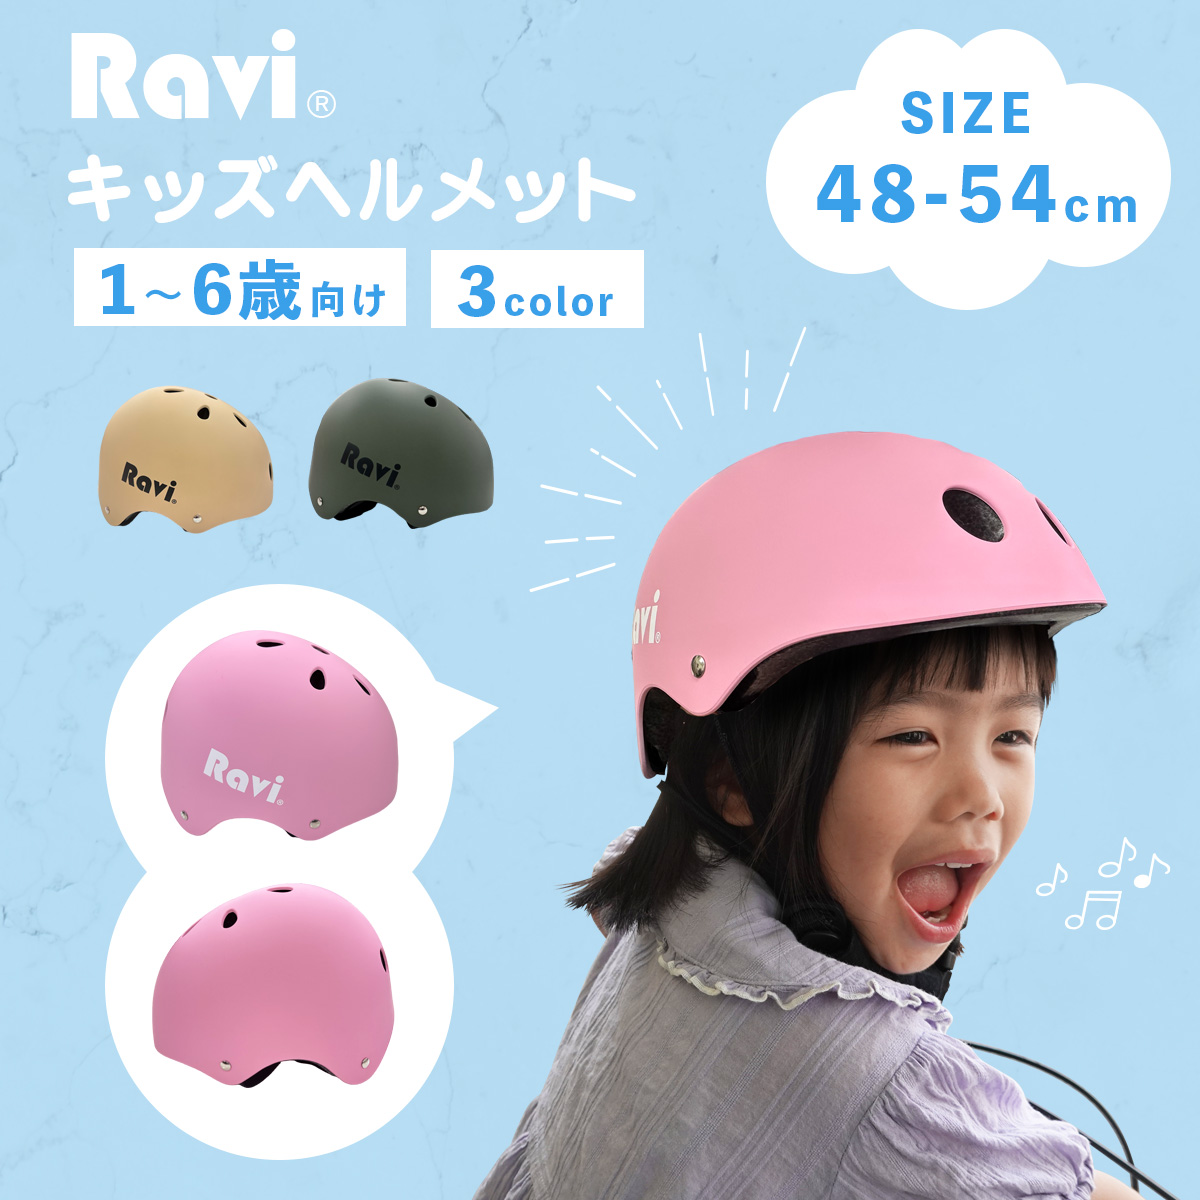  шлем детский Kids велосипед Ravilabi ребенок детский сад 1 лет 2 лет 3 лет 4 лет 5 лет уличный скейтборд самокат тачка 